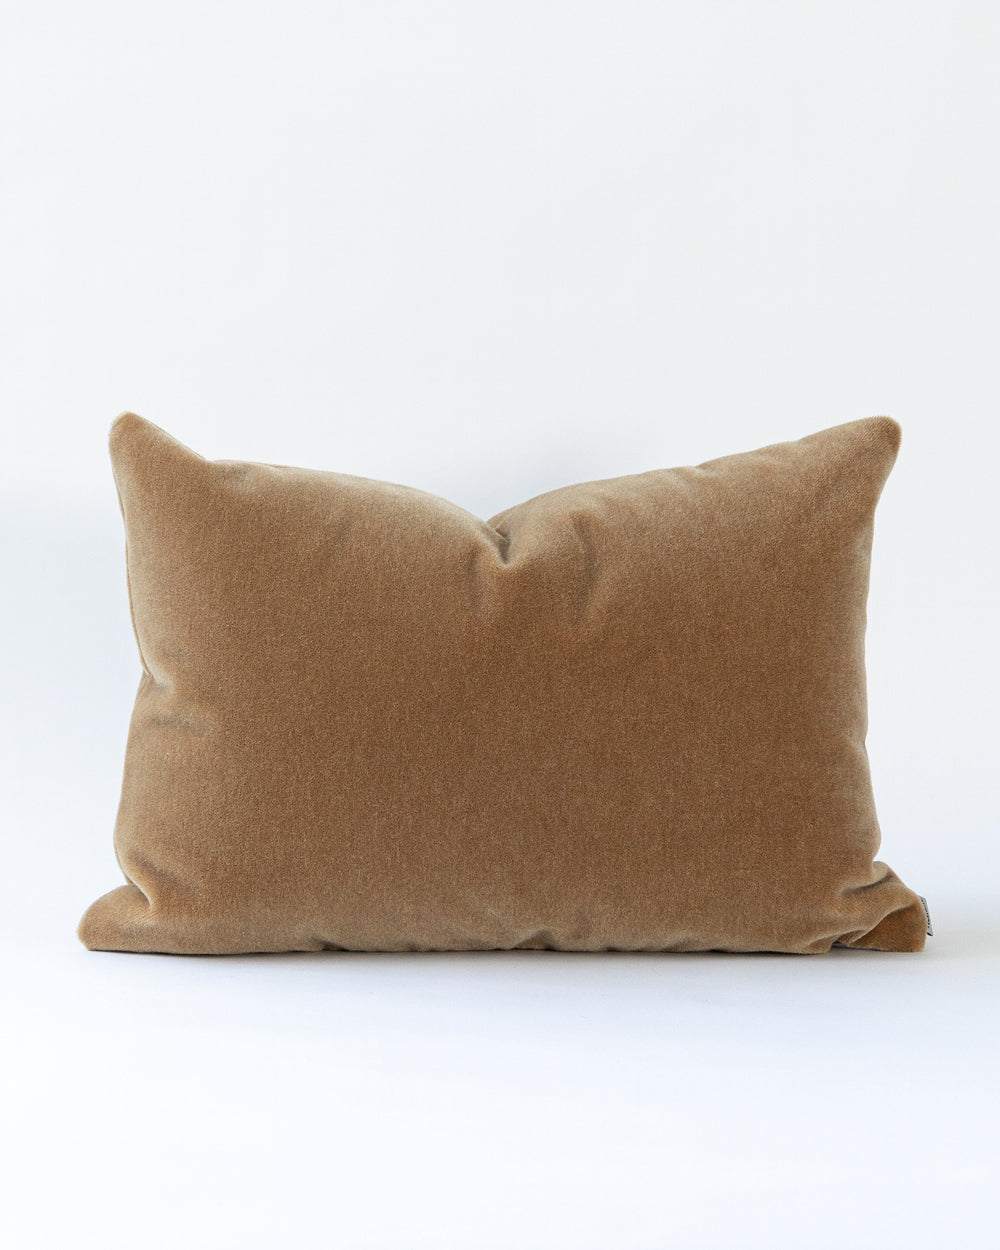 Rectangle camel coloured Mohair Pillow.